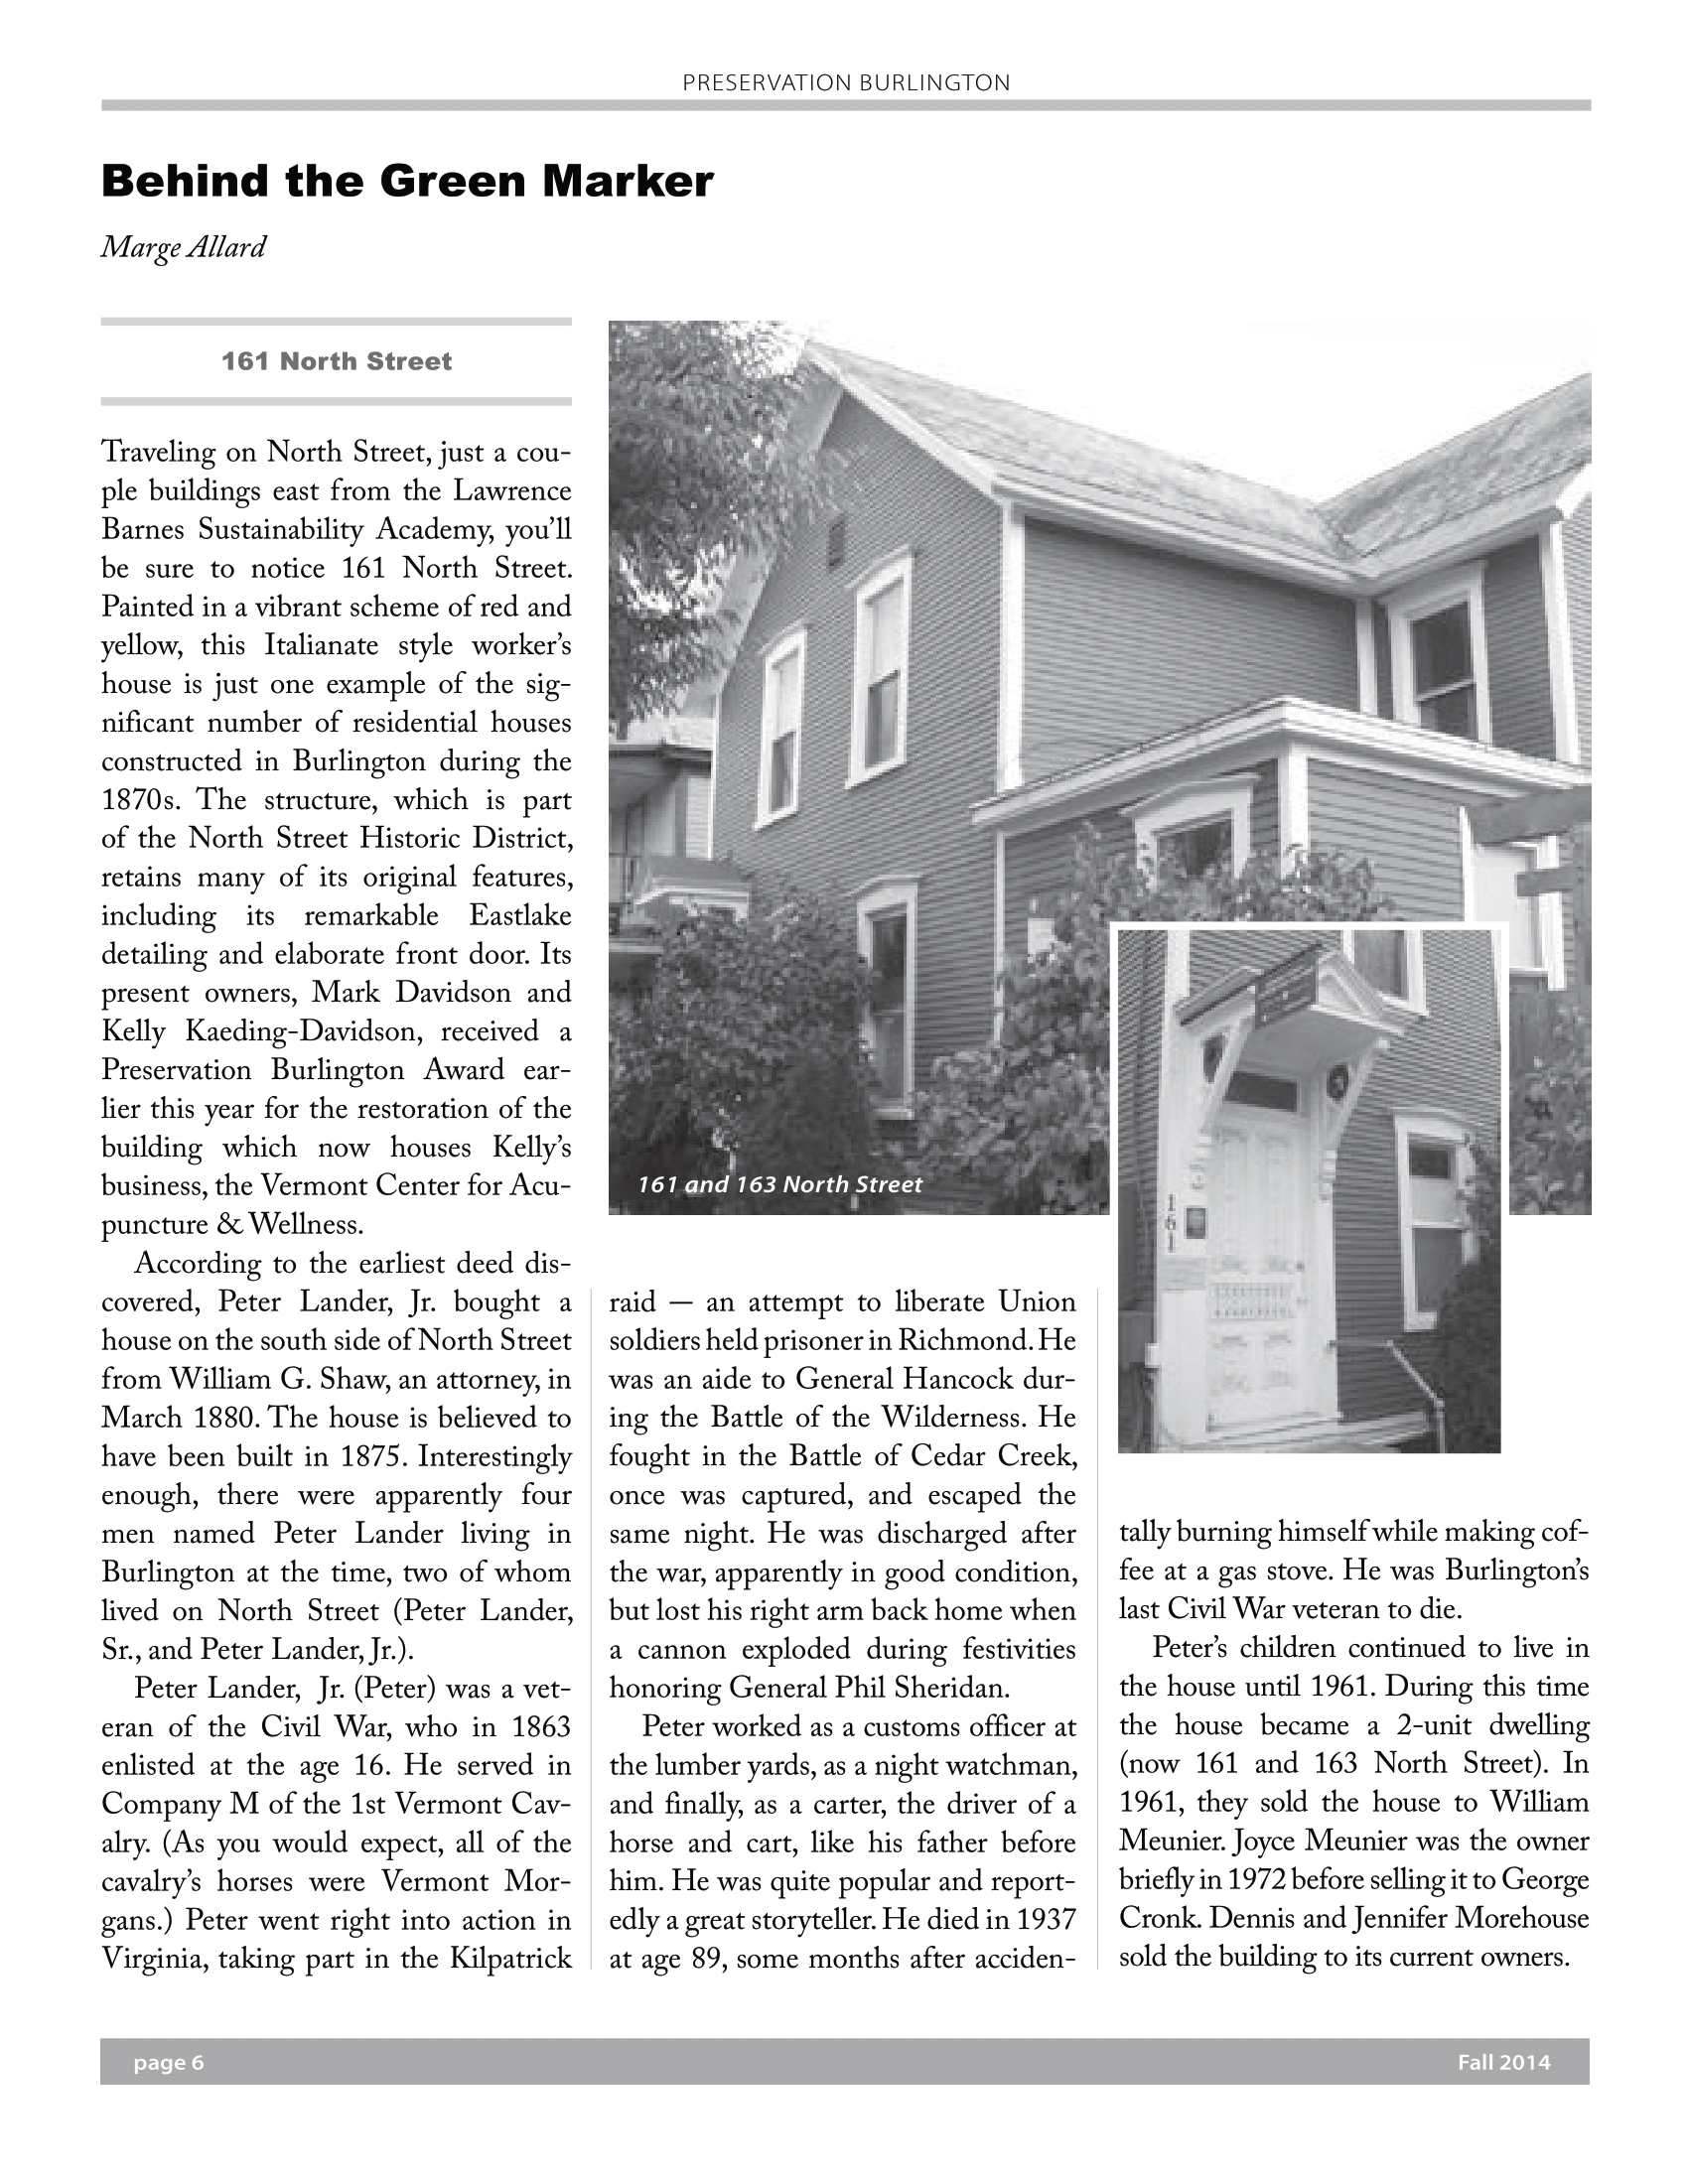 preservation-burlington-newsletter-fall-2014-6.png